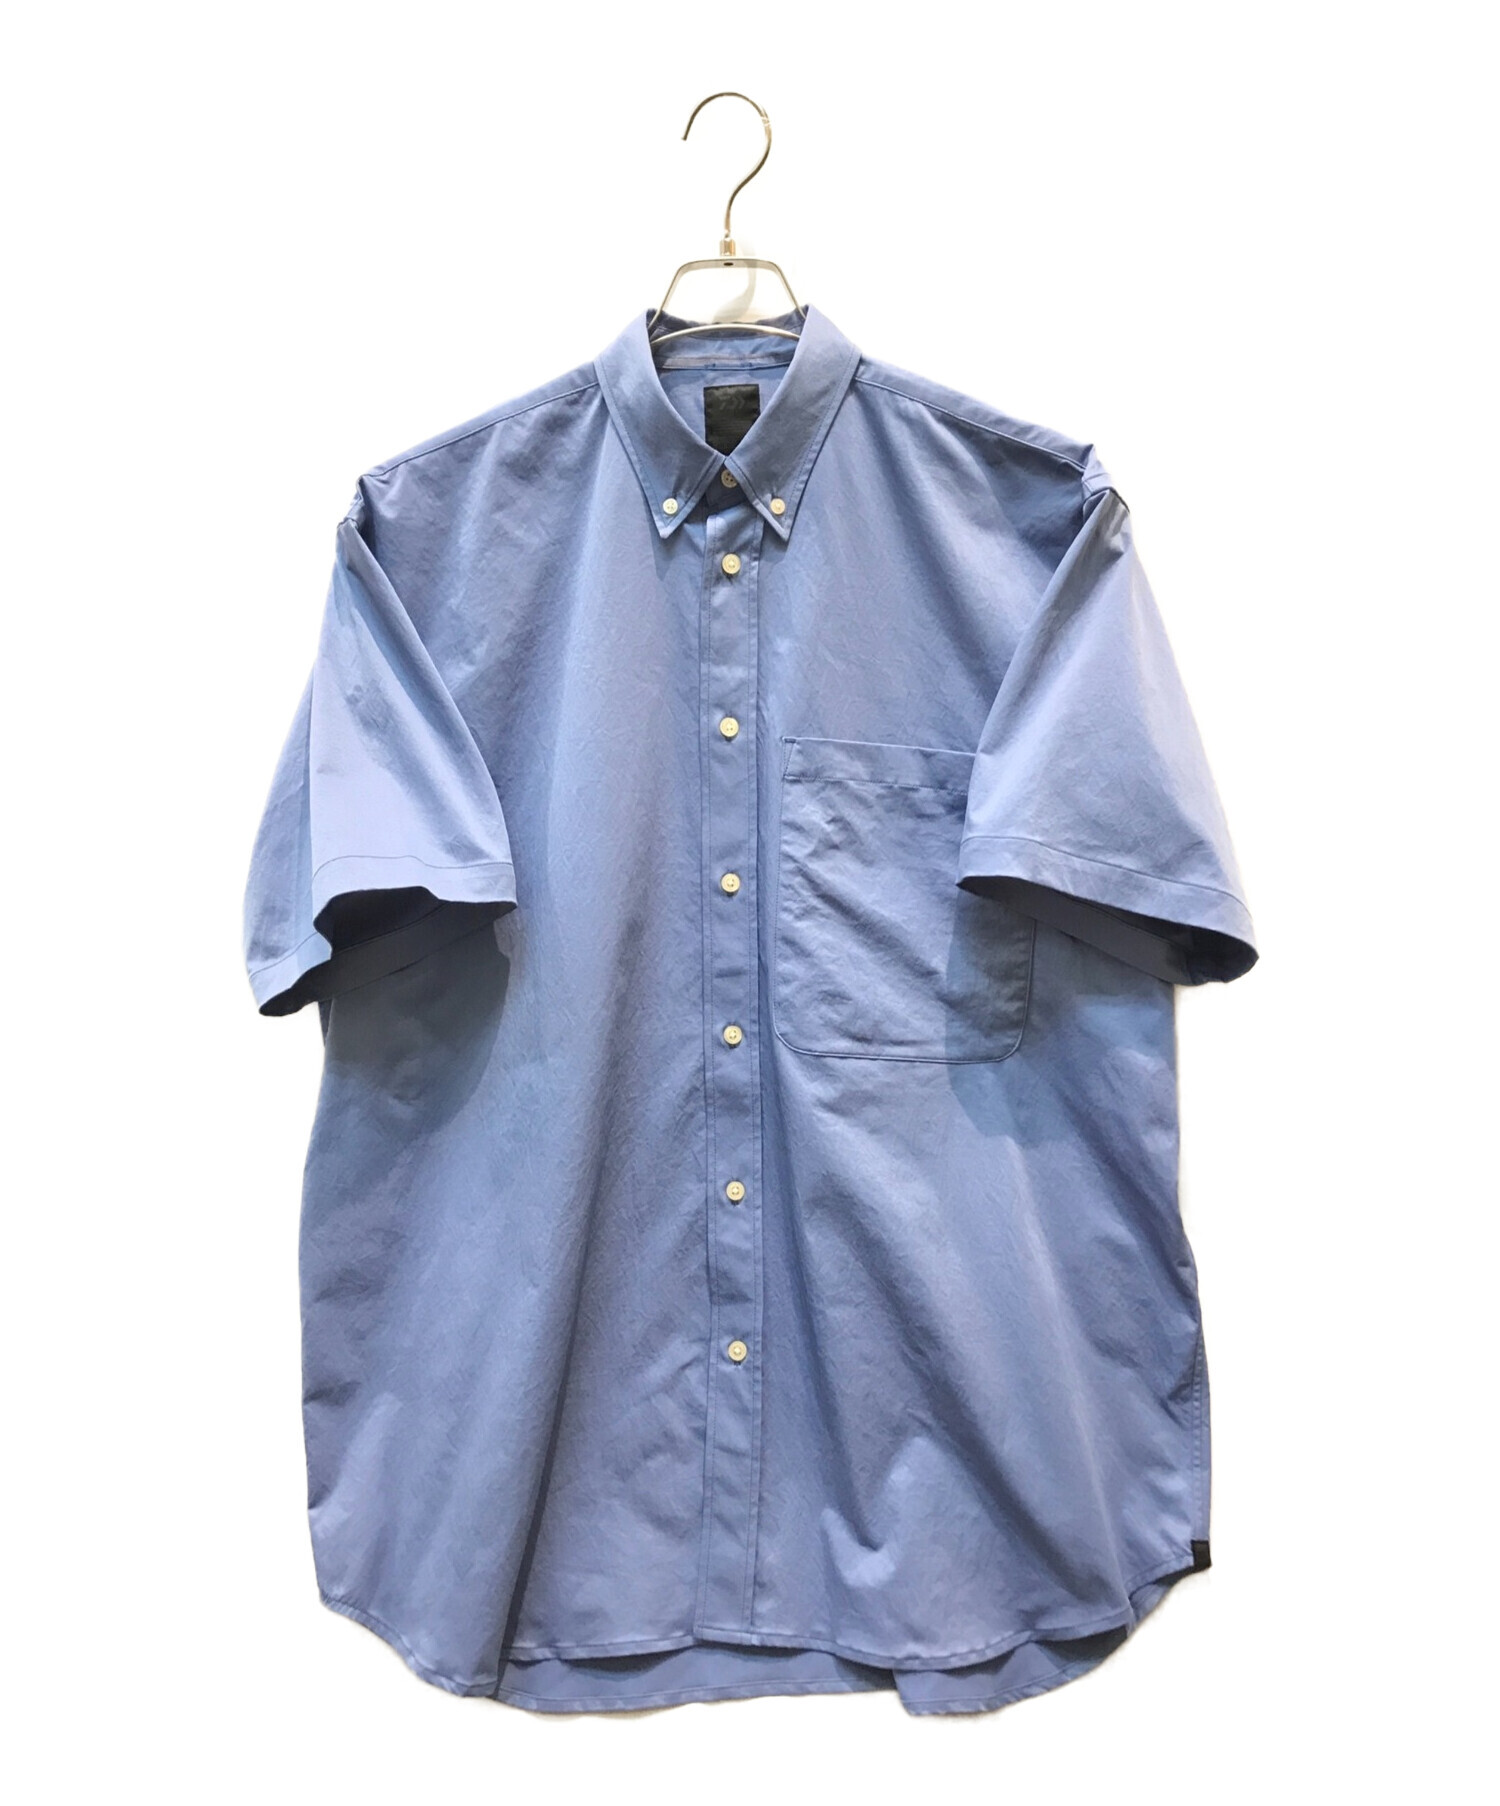 DAIWA PIER39 (ダイワ ピア39) 半袖シャツ ブルー サイズ:M